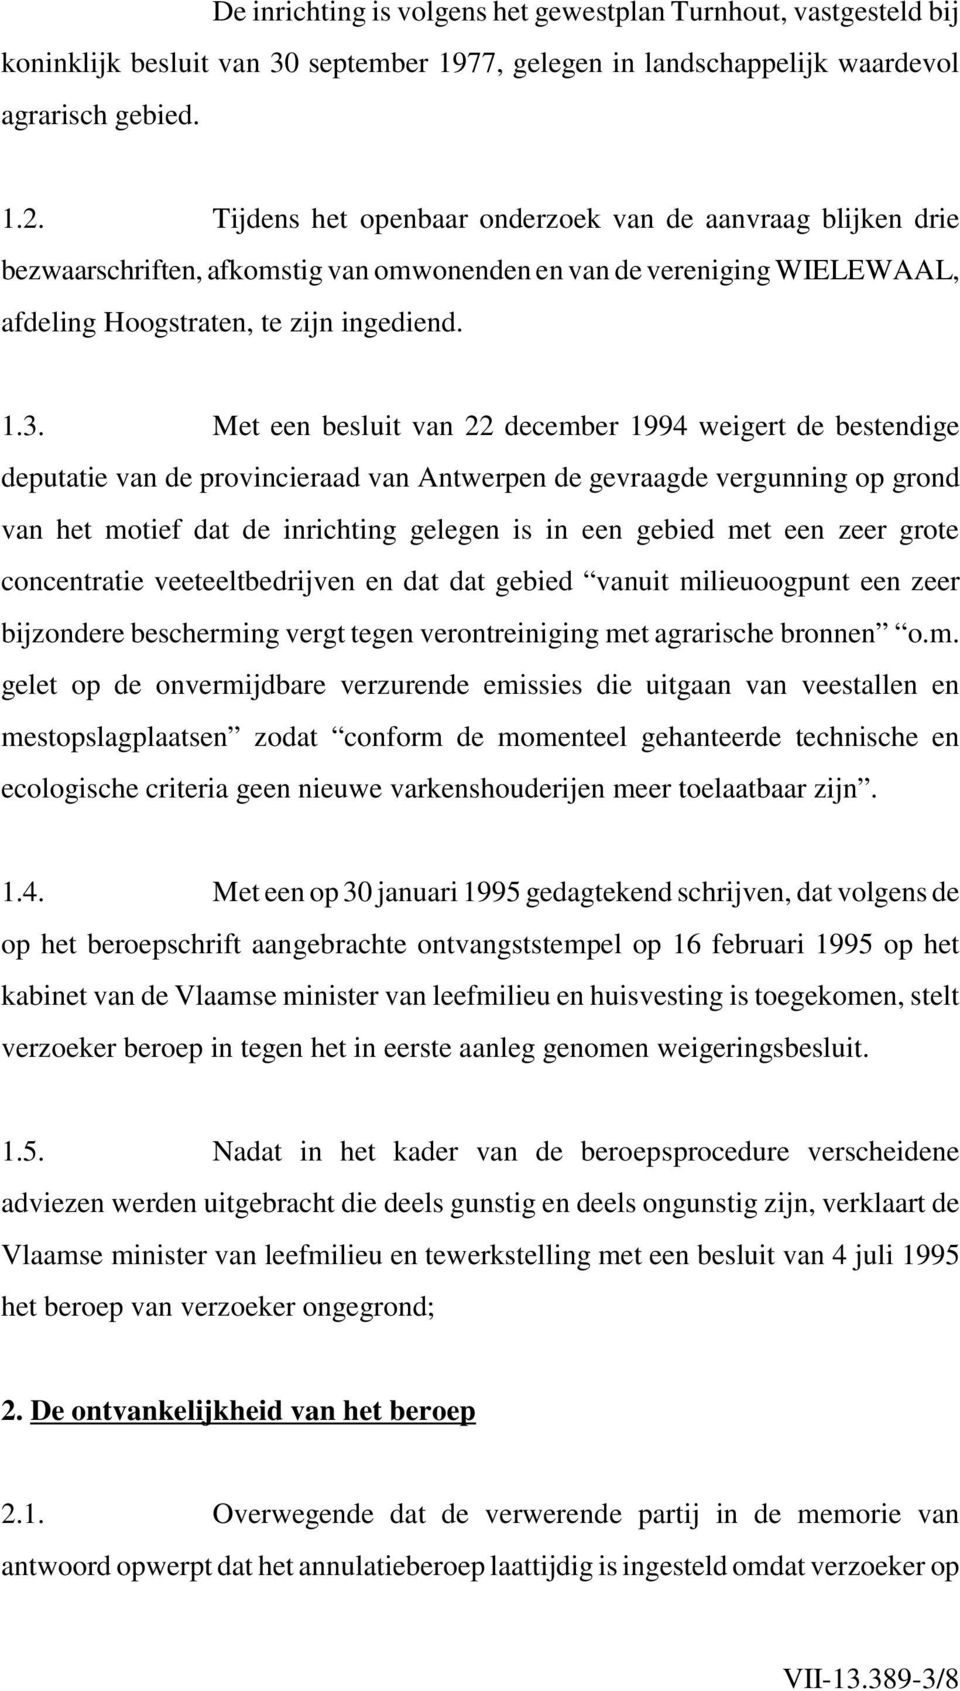 Met een besluit van 22 december 1994 weigert de bestendige deputatie van de provincieraad van Antwerpen de gevraagde vergunning op grond van het motief dat de inrichting gelegen is in een gebied met